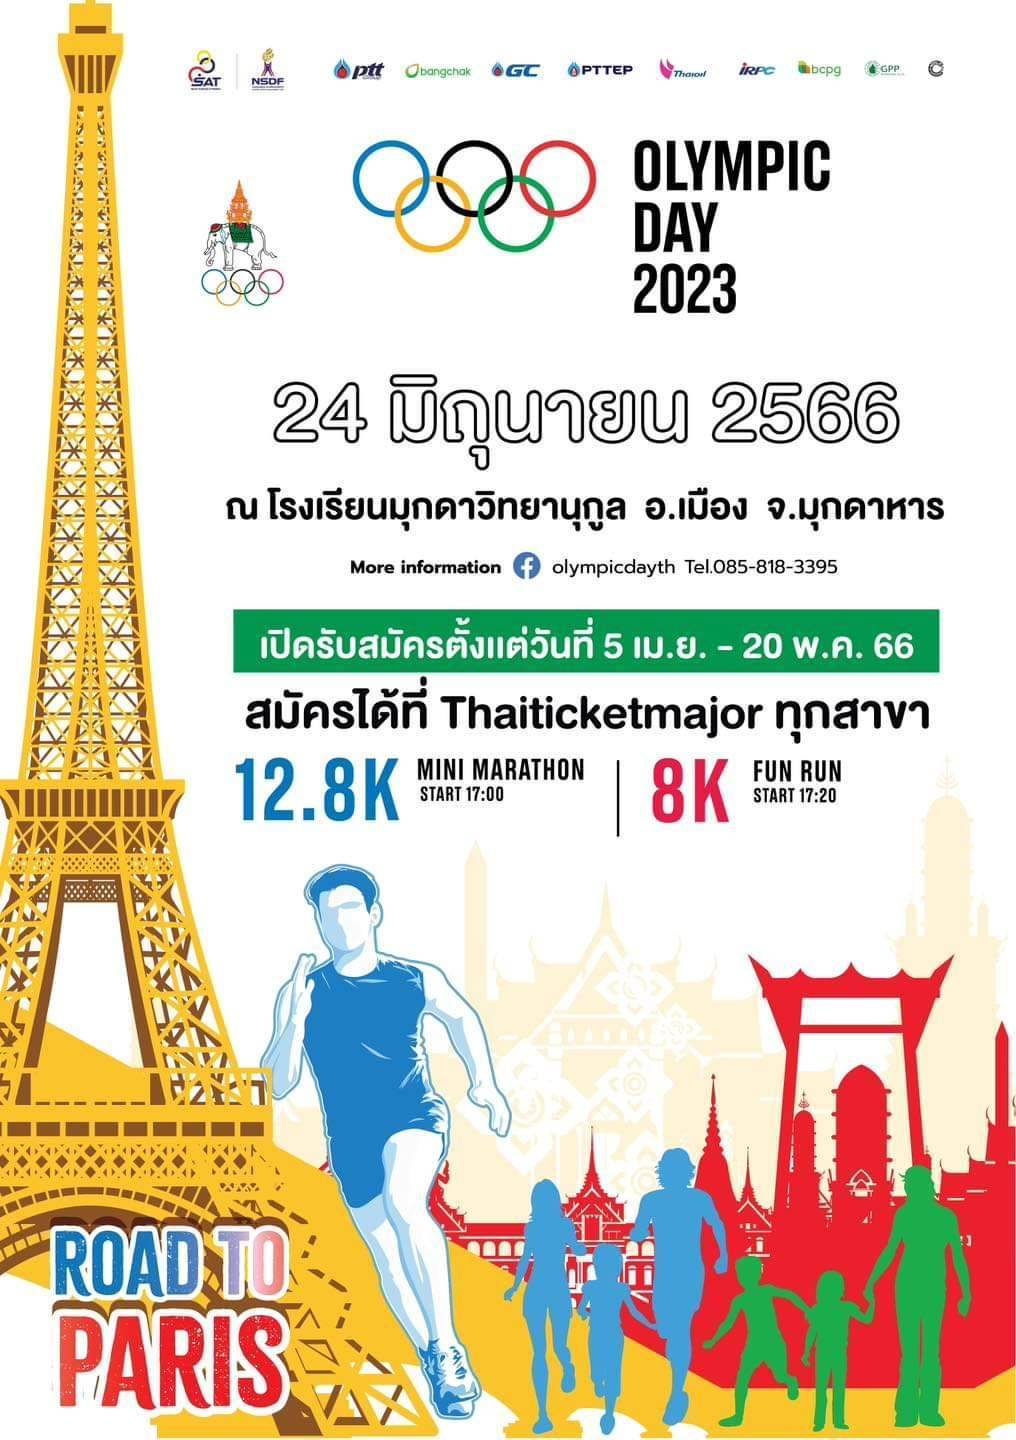 Olympic Day 2023 ณ จังหวัดมุกดาหาร  ในระหว่างวันที่ 23-25 มิถุนายน 2566